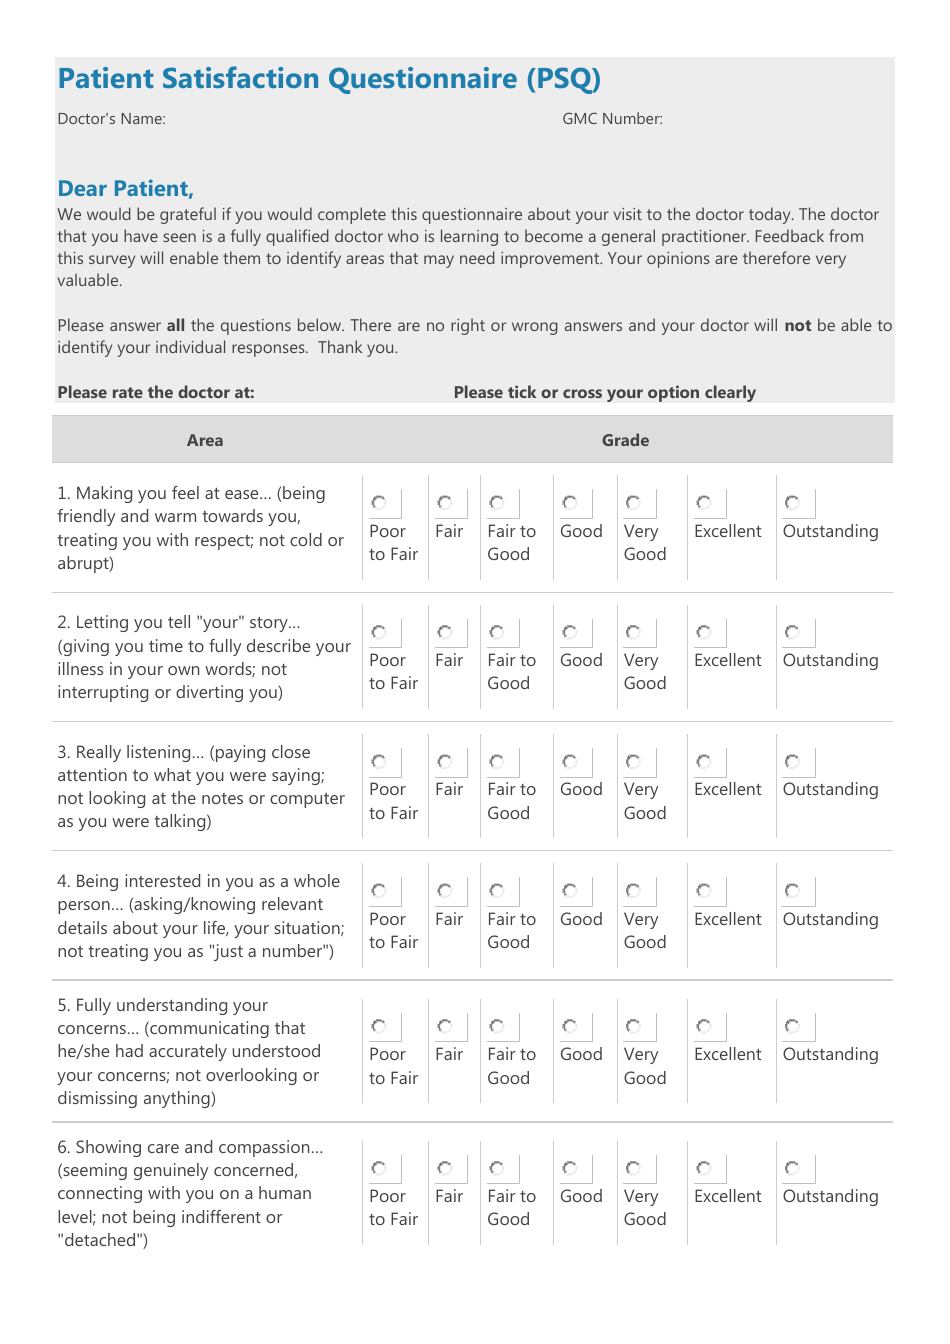 Patient Satisfaction Questionnaire (PSQ) Form Preview